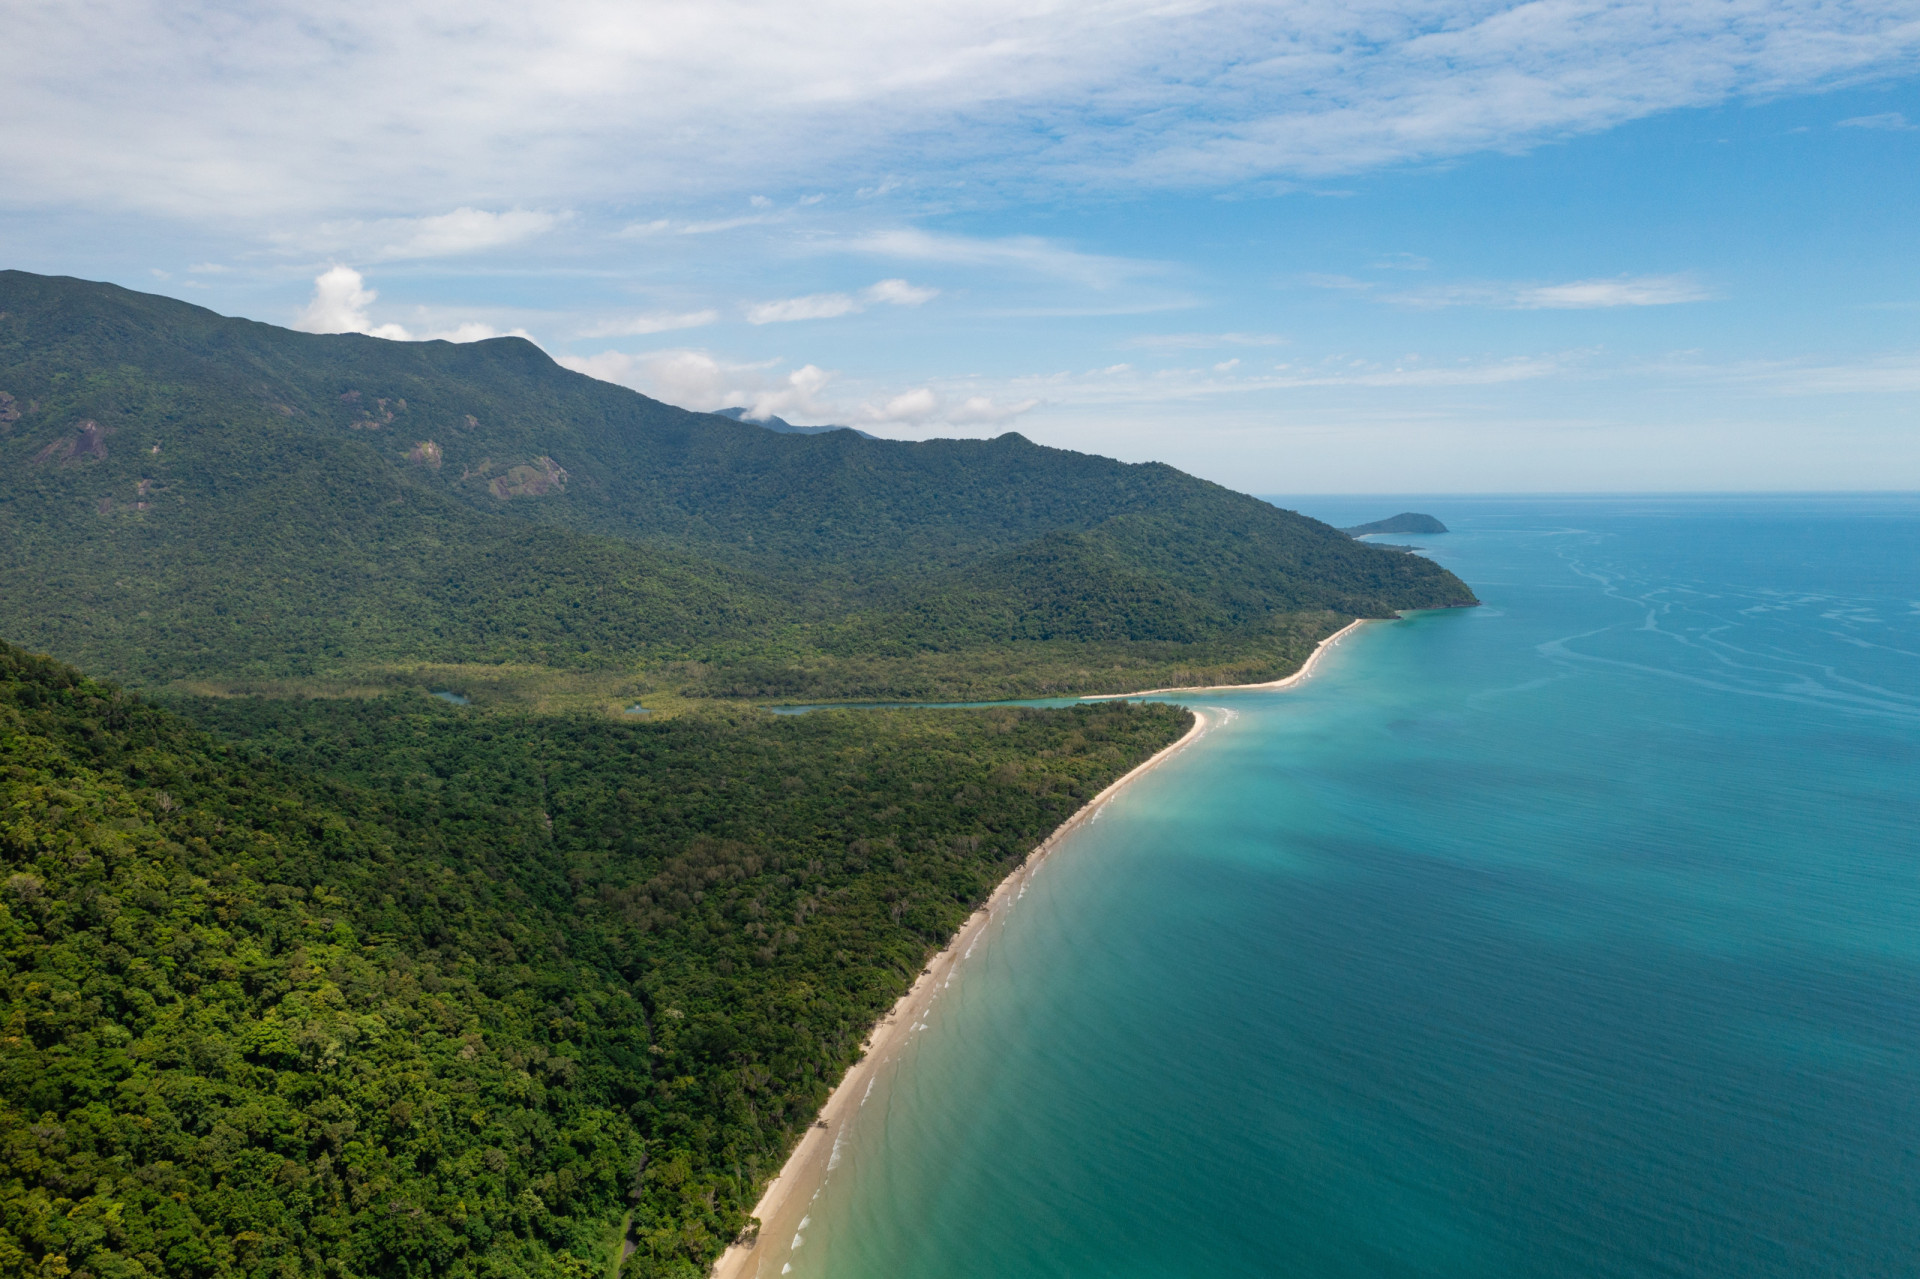 <p>La forêt tropicale de Daintree, située sur la côte nord-est du Queensland, en Australie, est la plus ancienne forêt tropicale de la planète. On estime qu'elle a environ 180 millions d'années, soit près de 10 millions d'années de plus que l'Amazonie en Amérique du Sud.</p><p><a href="https://www.msn.com/fr-ca/community/channel/vid-7xx8mnucu55yw63we9va2gwr7uihbxwc68fxqp25x6tg4ftibpra?cvid=94631541bc0f4f89bfd59158d696ad7e">Suivez-nous et accédez tous les jours à du contenu exclusif</a></p>